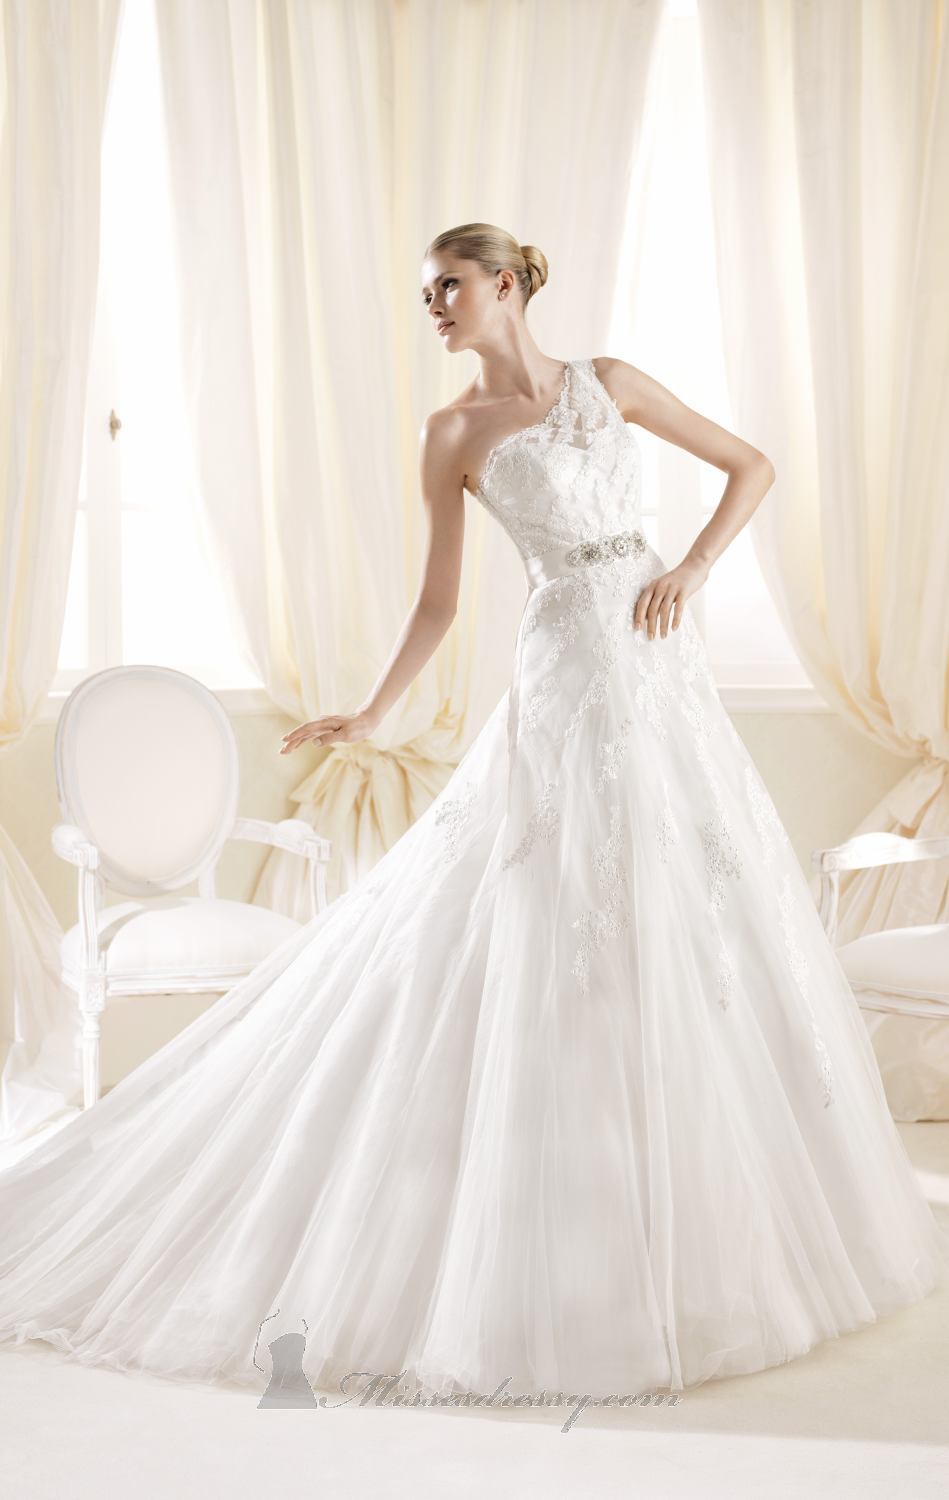 23 Elegant One Shoulder Wedding Dresses - Style Motivation
